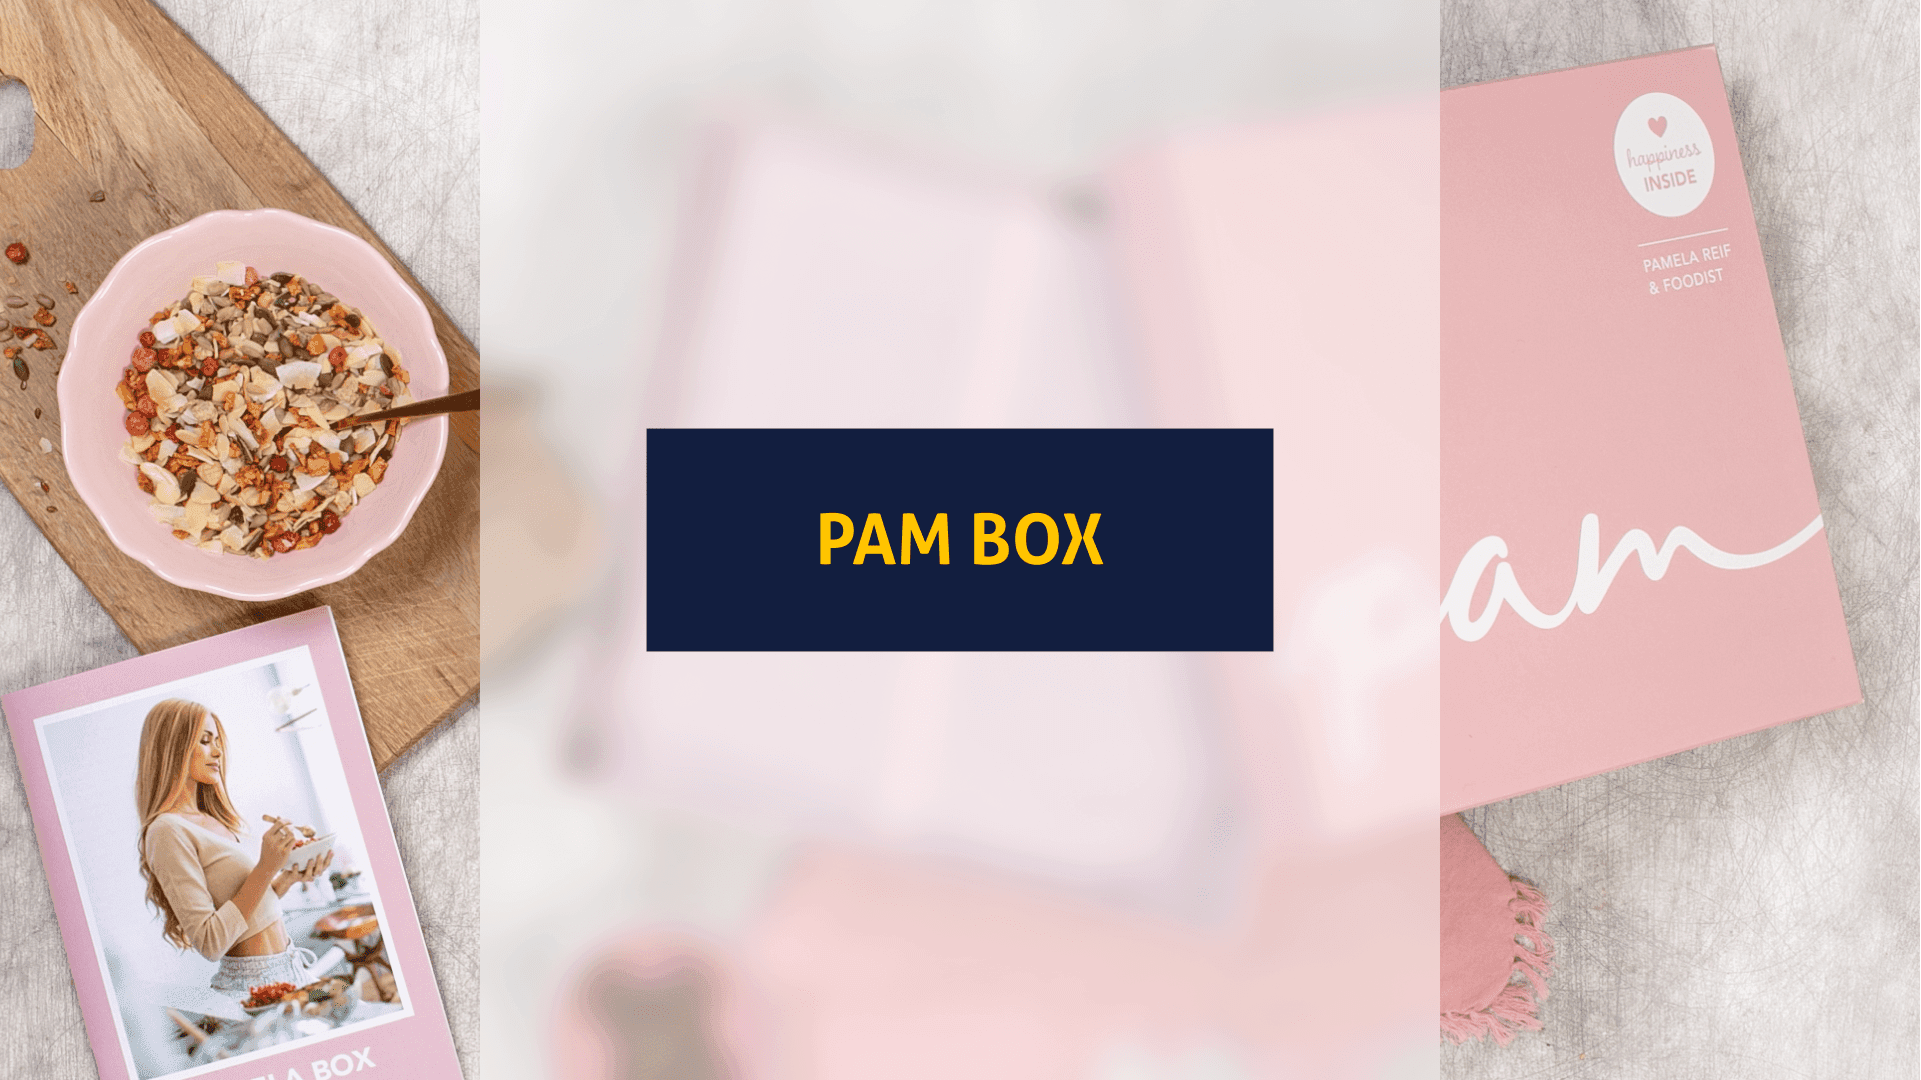 Titelbild für den Artikel: Pam Box Testbericht: Wie gut ist die Fitness Box von Pamela Reif?